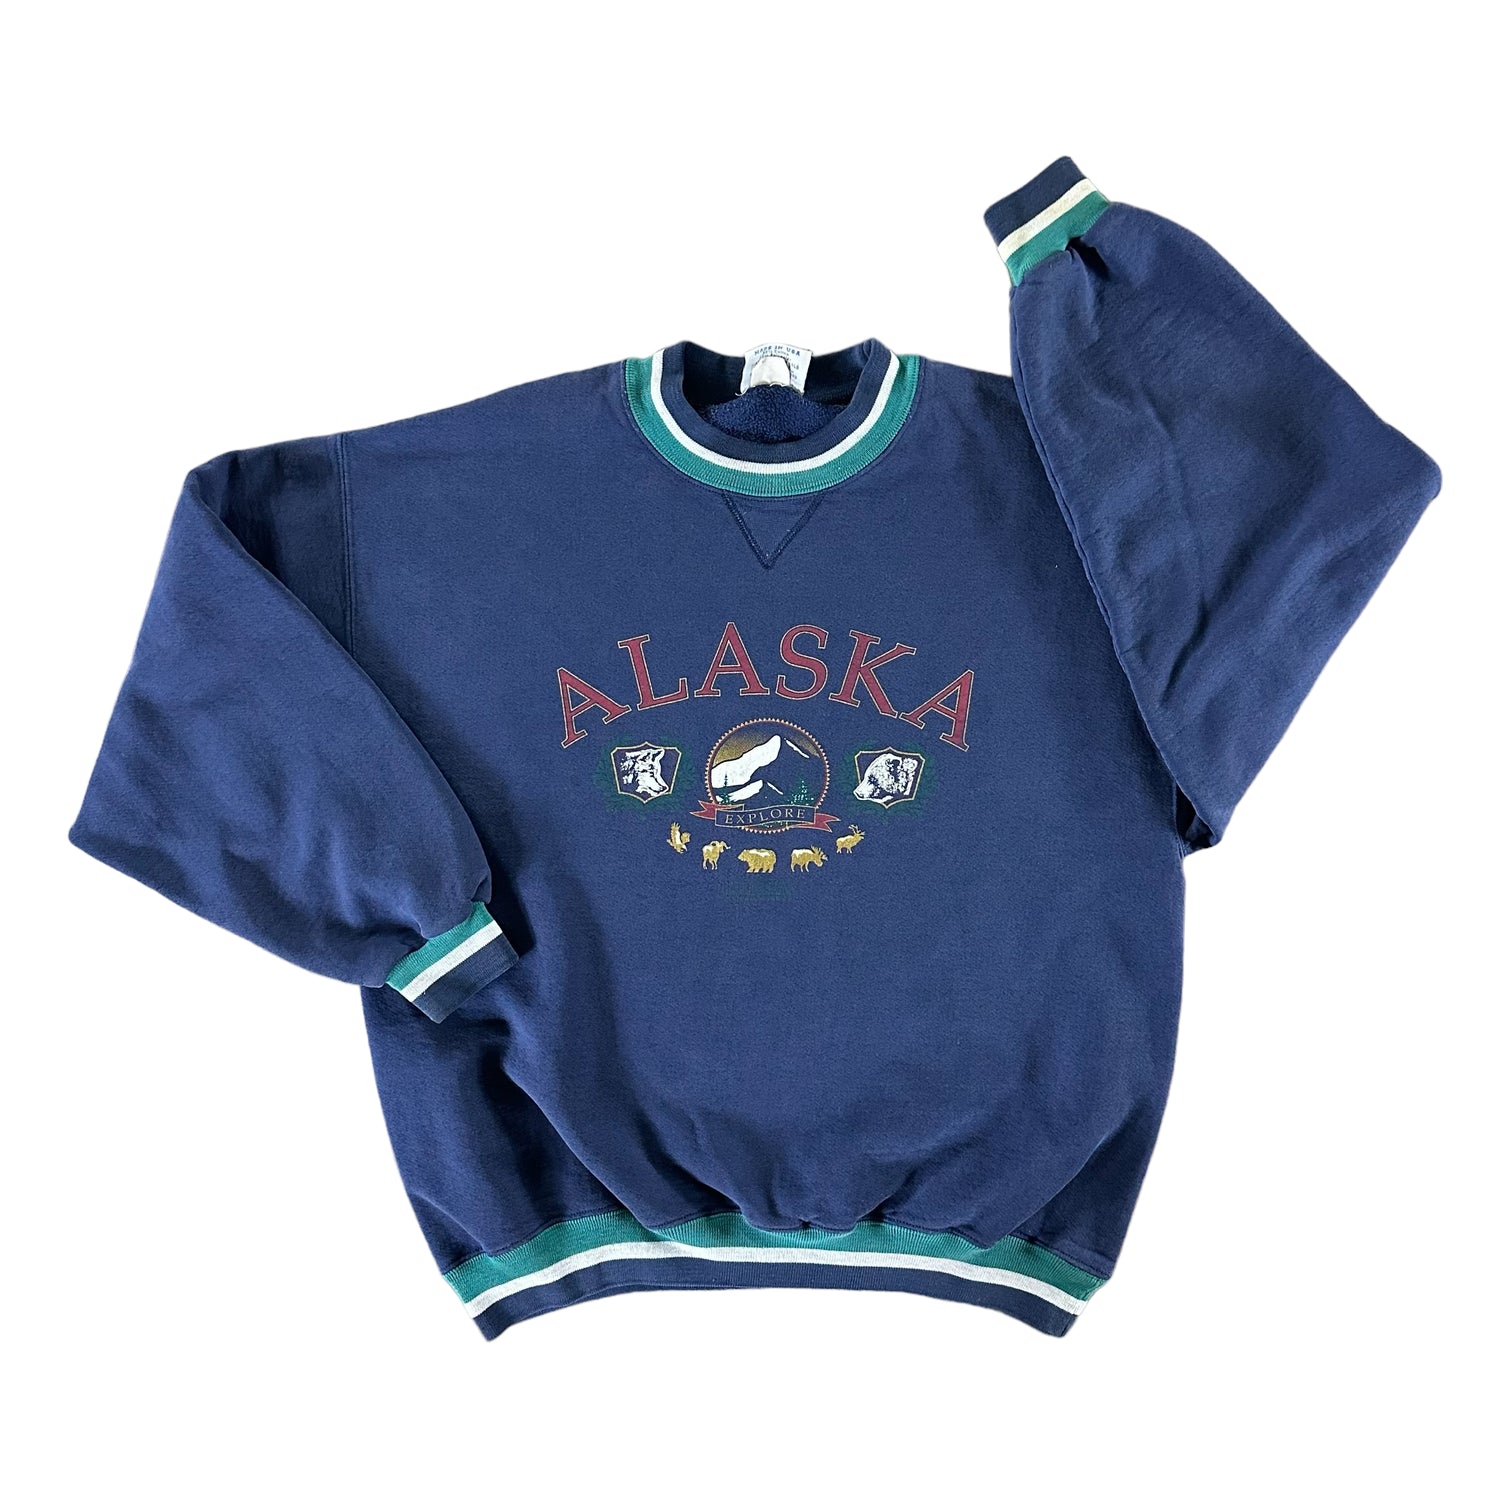 Vintage 1990s Alaska Sweatshirt size Large